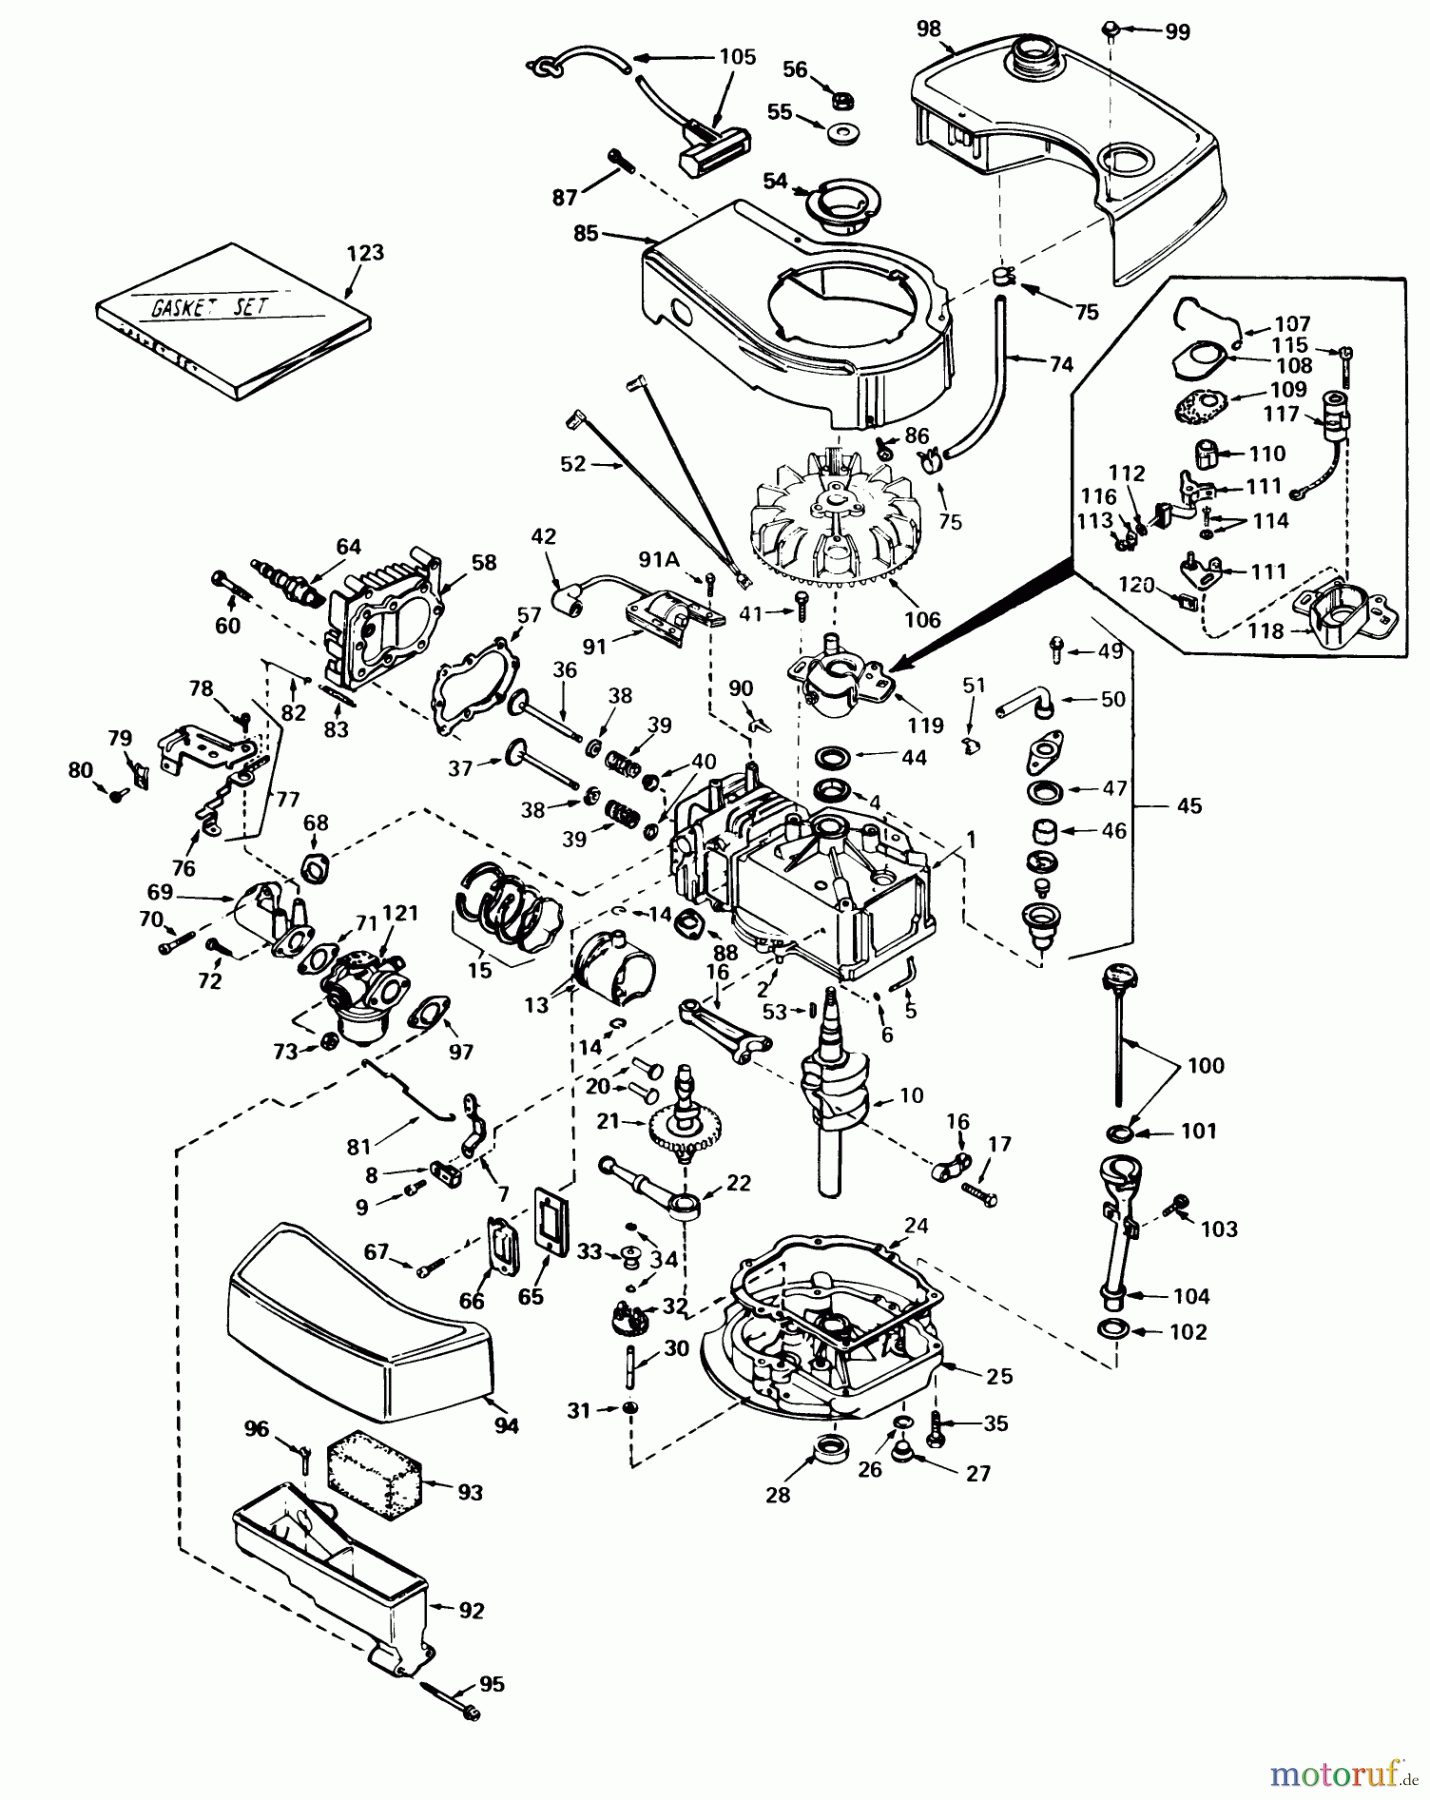  Toro Neu Mowers, Walk-Behind Seite 2 21738 - Toro Whirlwind Lawnmower, 1980 (0000001-0999999) ENGINE TECUMSEH MODEL NO. TNT 100-10056C